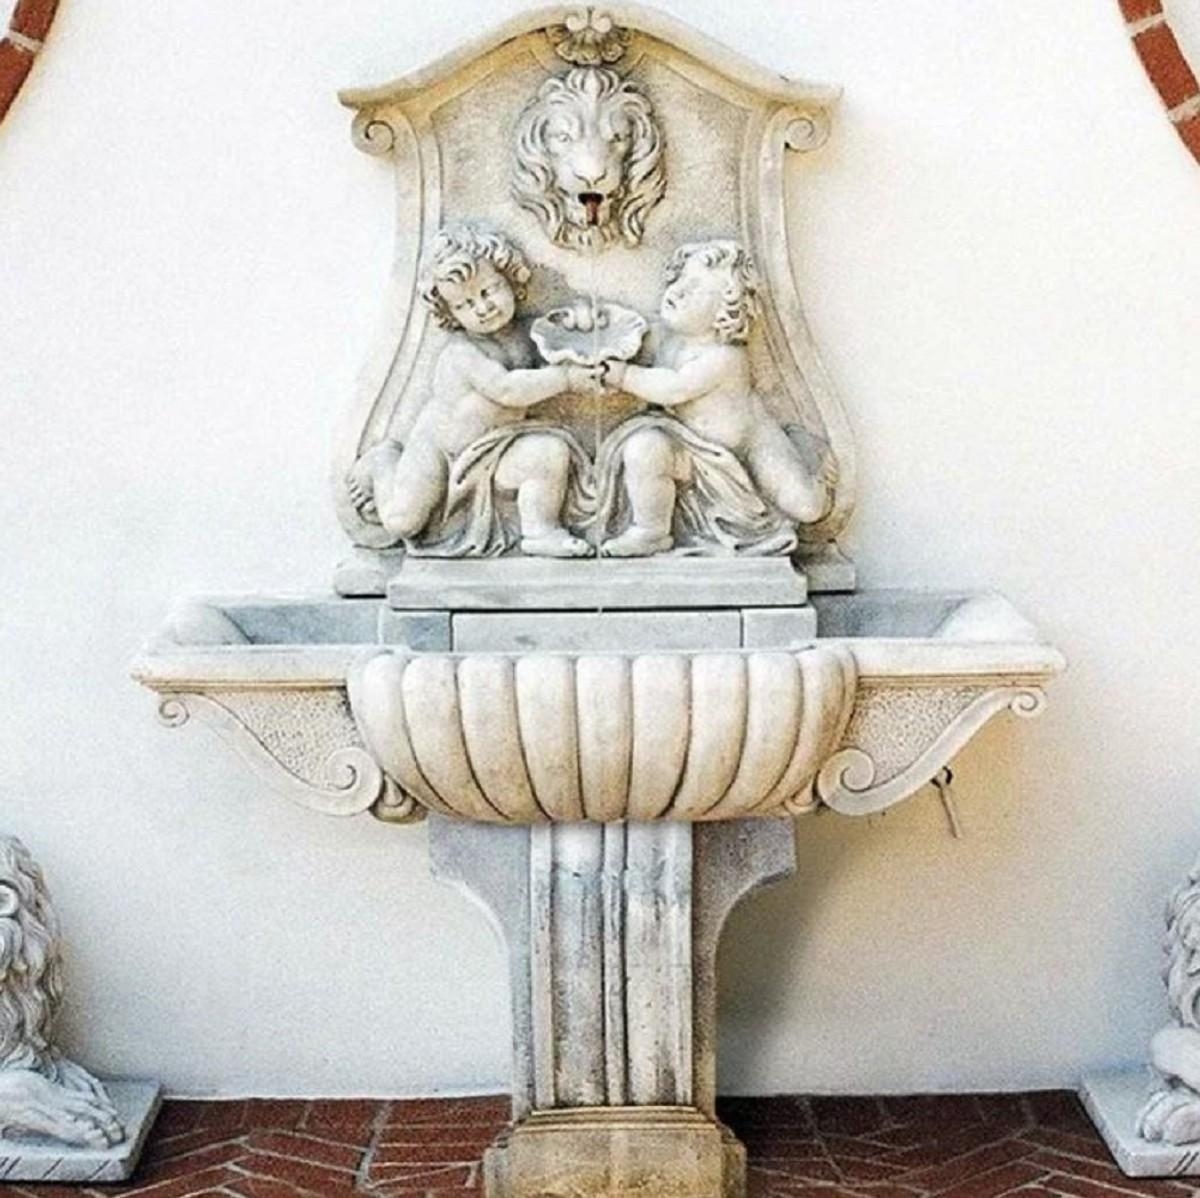 Nostalgischer Antik Stil Wandbrunnen von Casa Padrino #wandbrunnen #gartenbrunnen #casapadrino #barock #barockbrunnen #antik äantikstil #löwe #löwenbrunnen